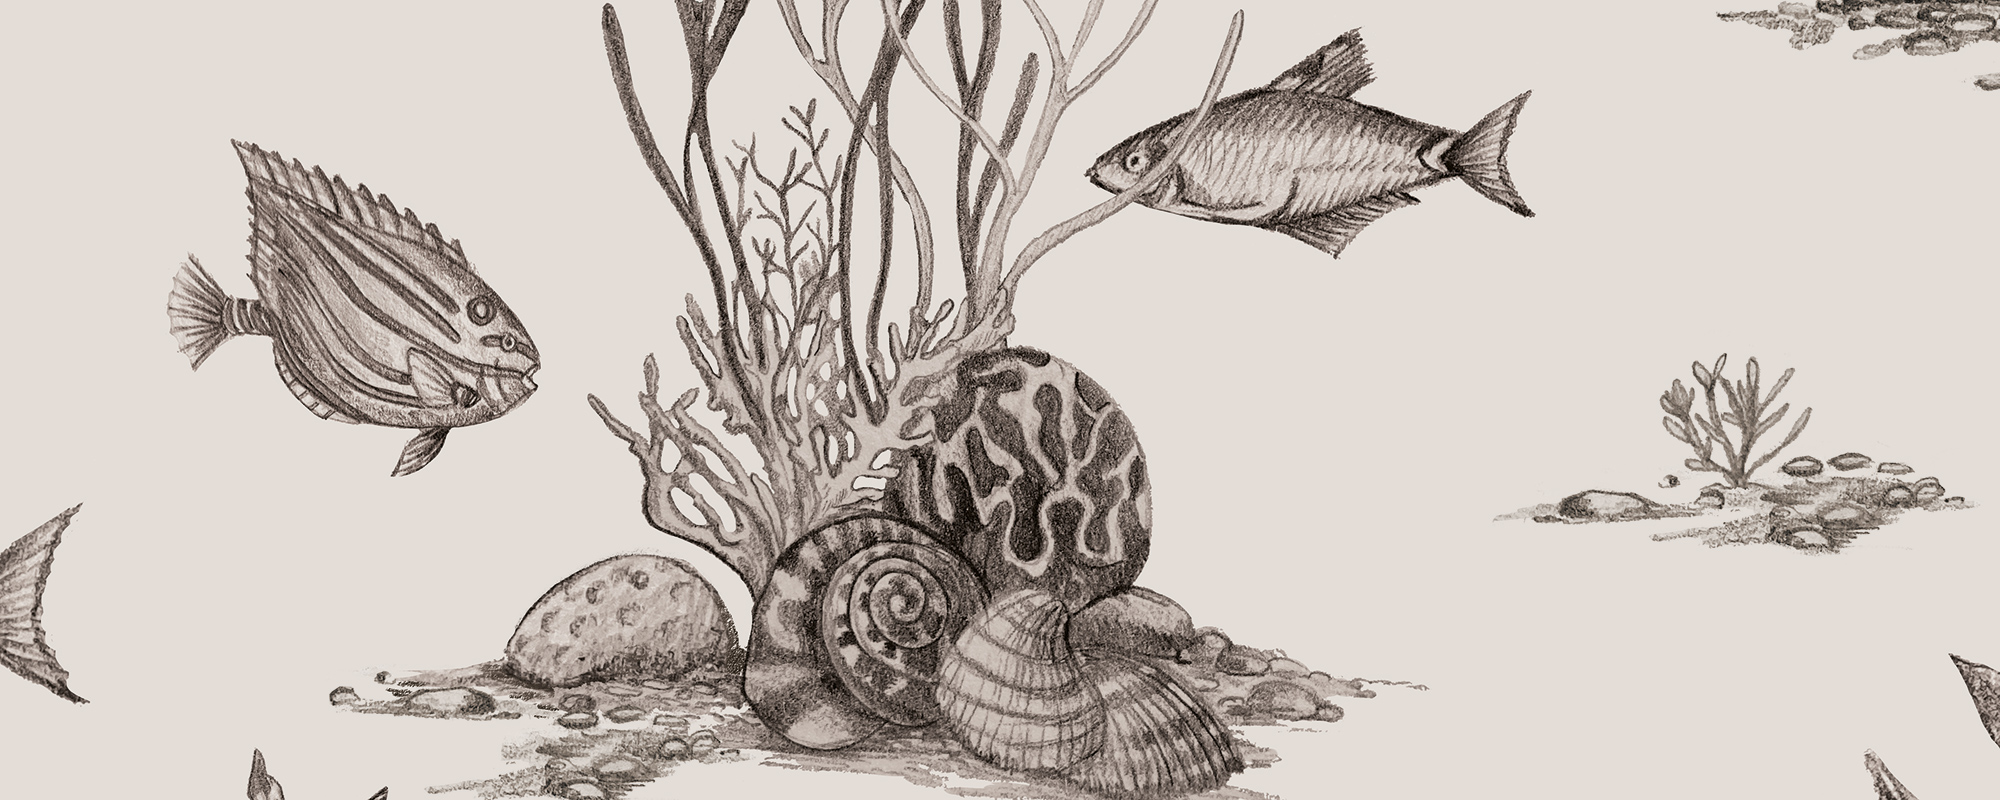 Toile de Jouy mere-elu – beež. Käsitsi illustreeritud tapeedidisain.